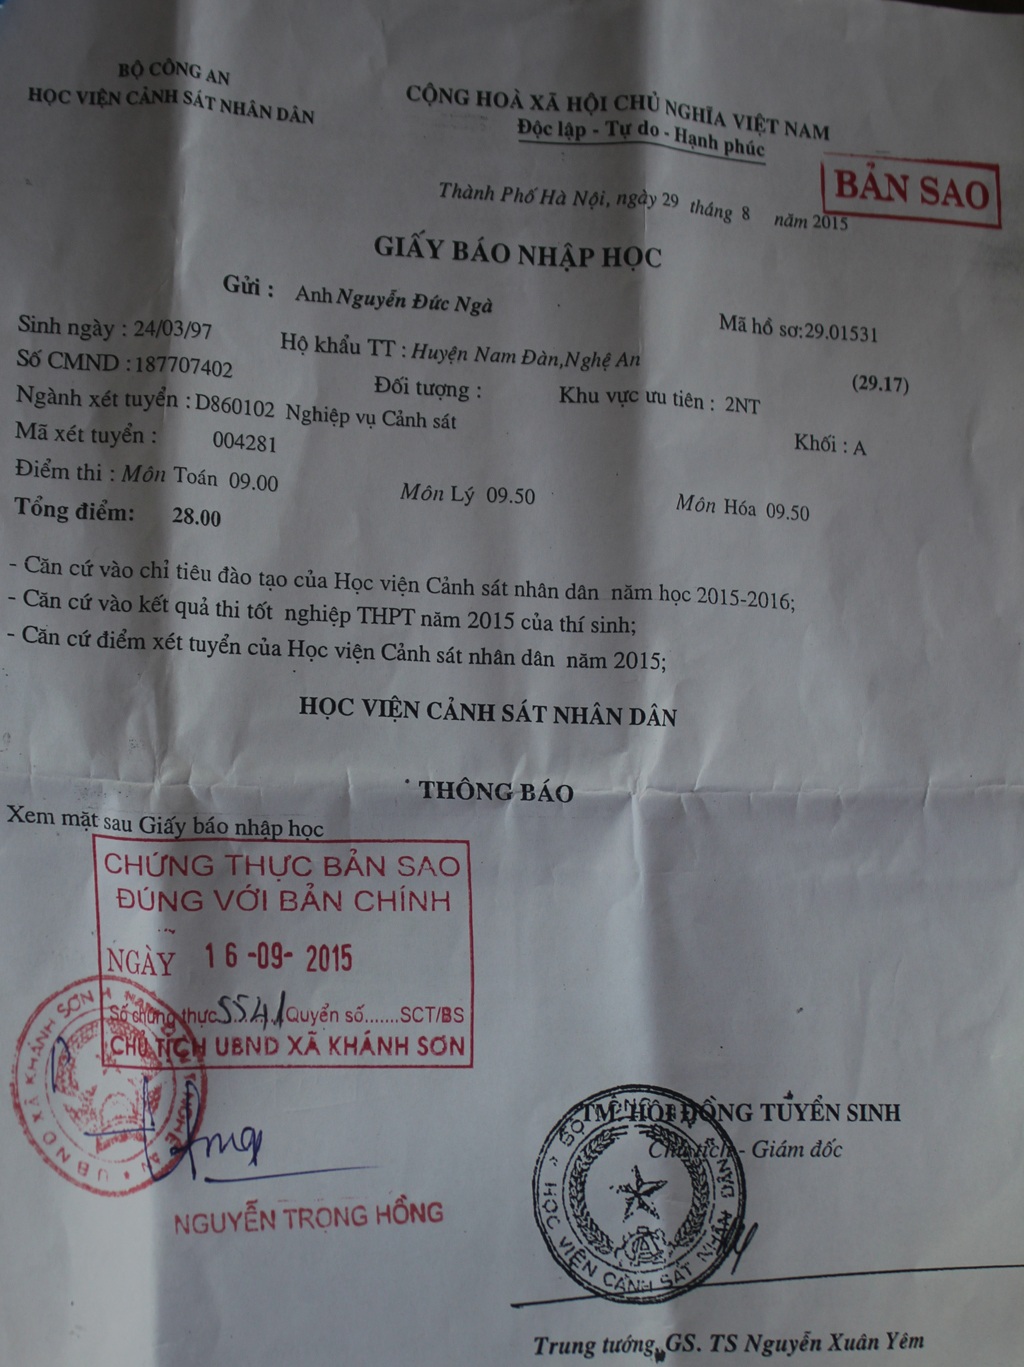 Giấy báo nhập học của Nguyễn Đức Ngà vào Học viện Cảnh sát nhân dân.